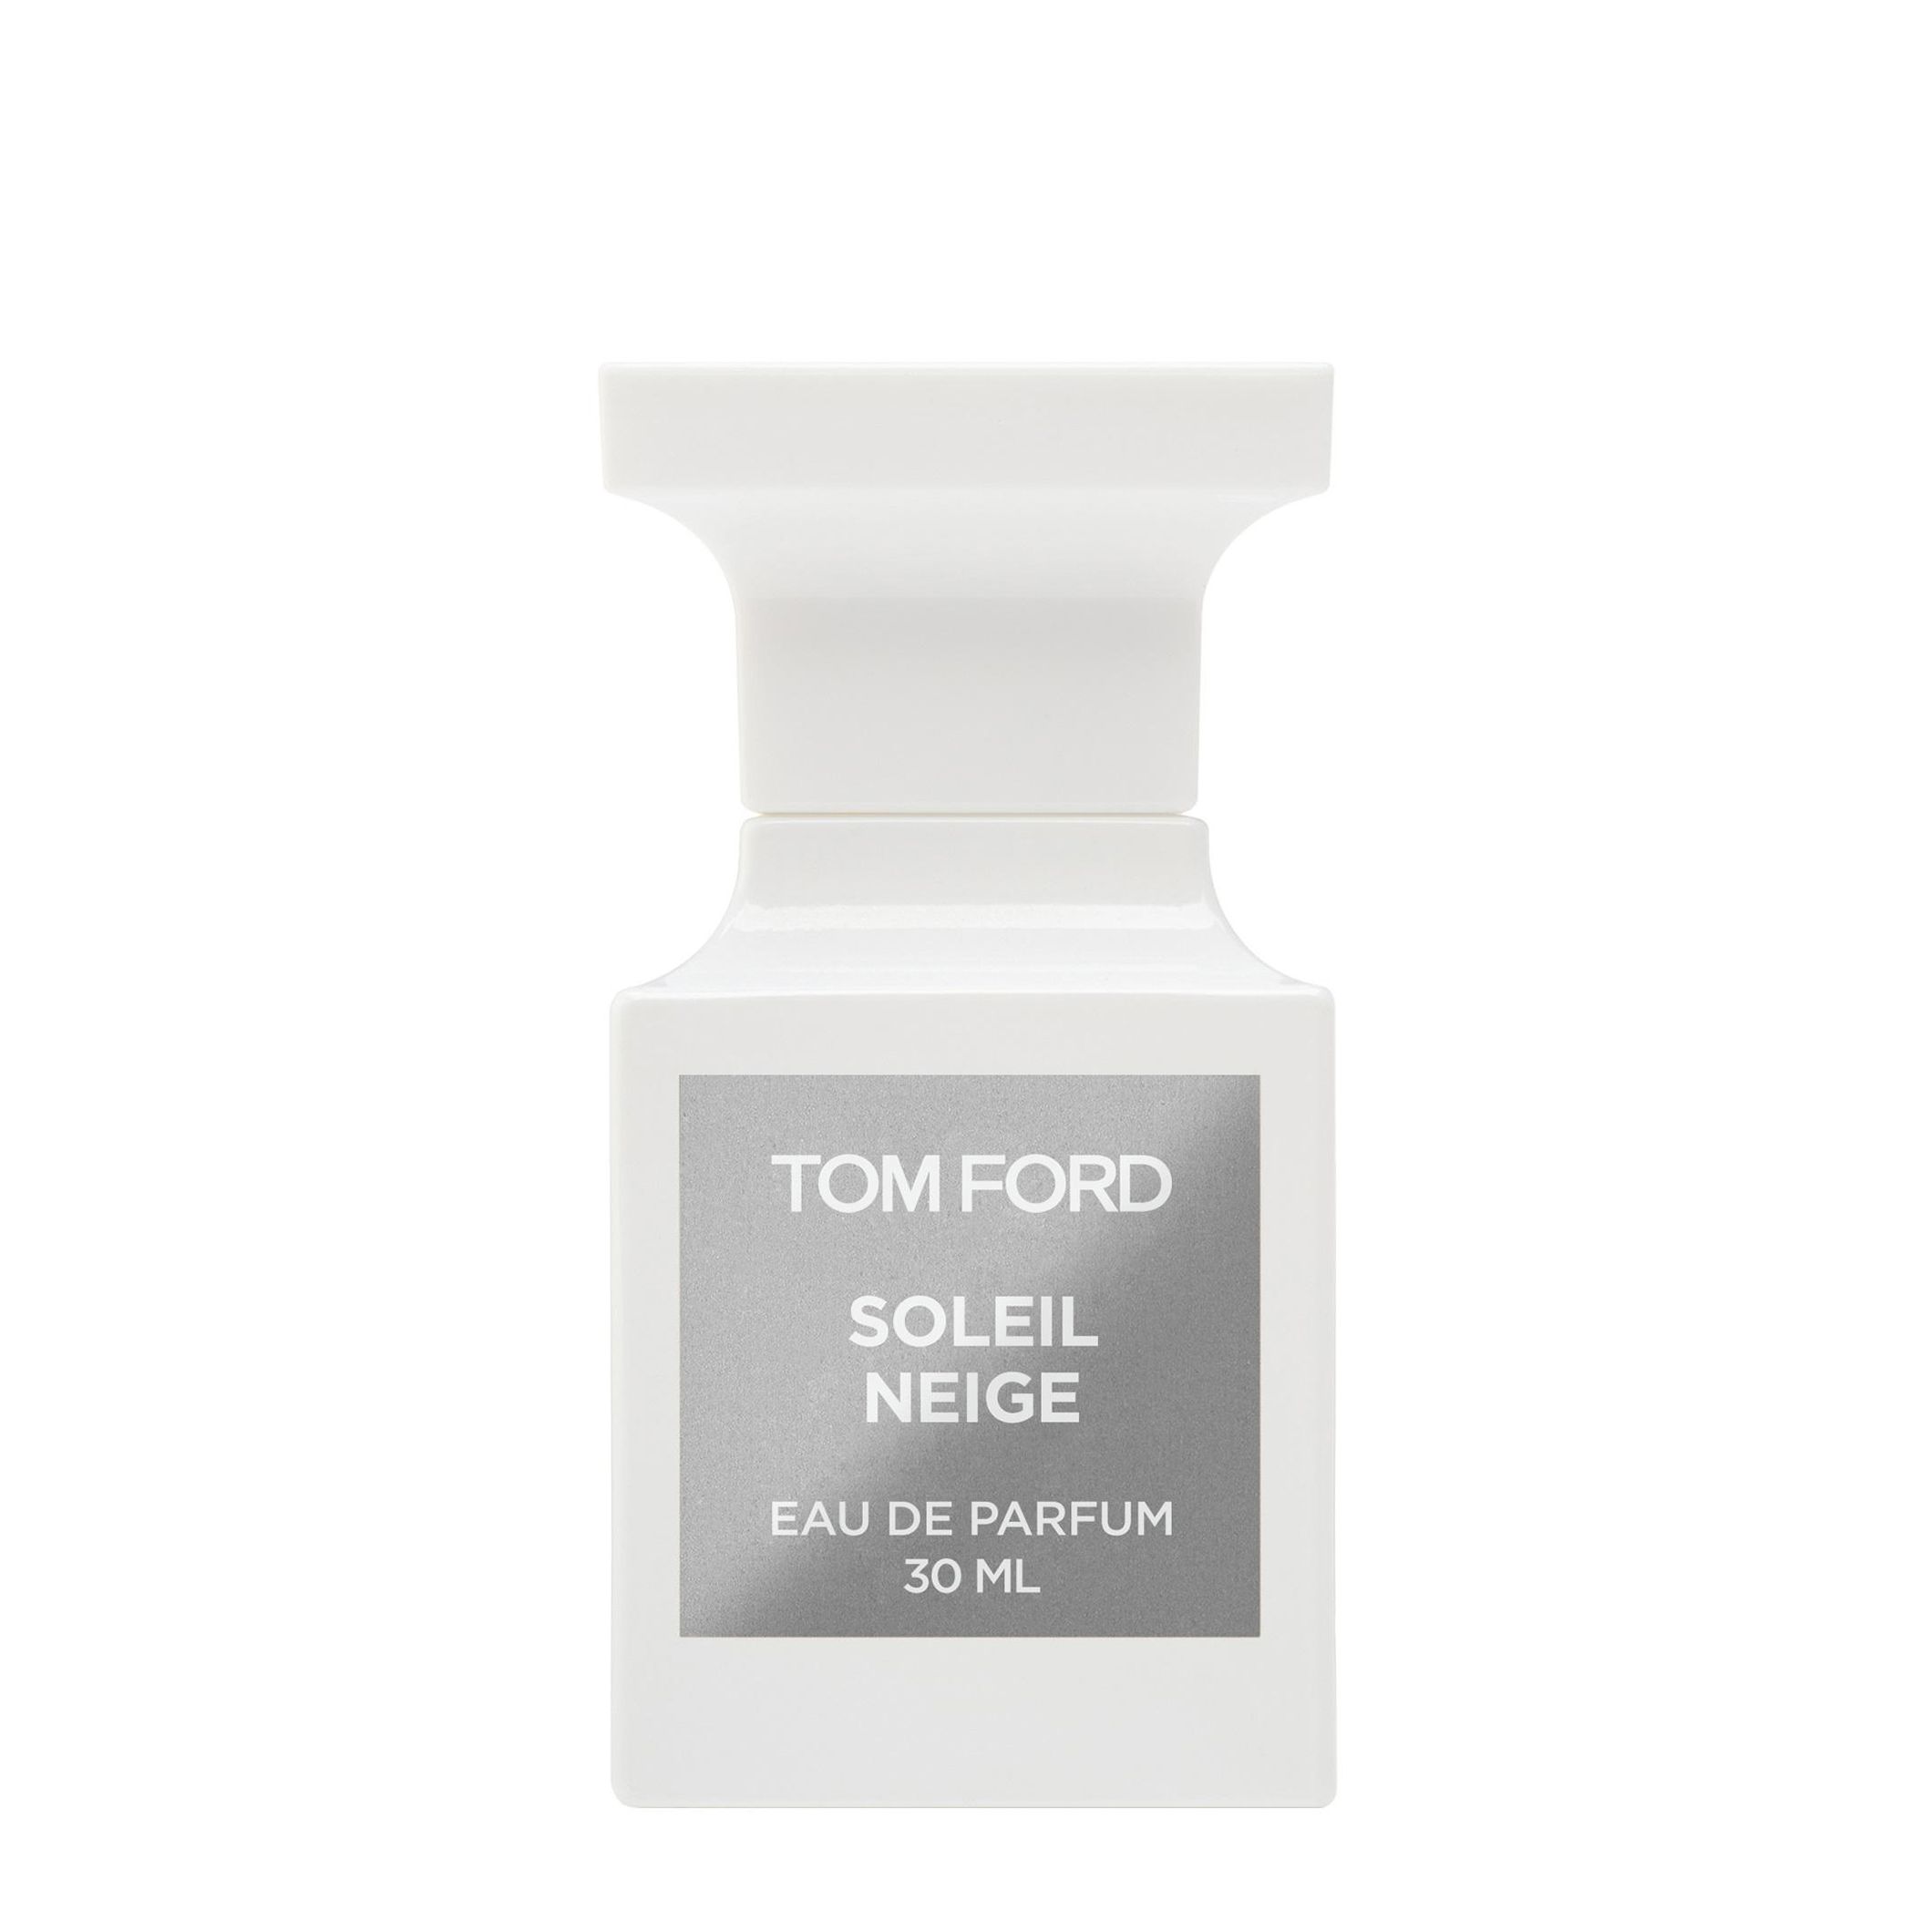 Вода парфюмерная Tom Ford Soleil Neige, унисекс, 30 мл tom ford soleil blanс 30